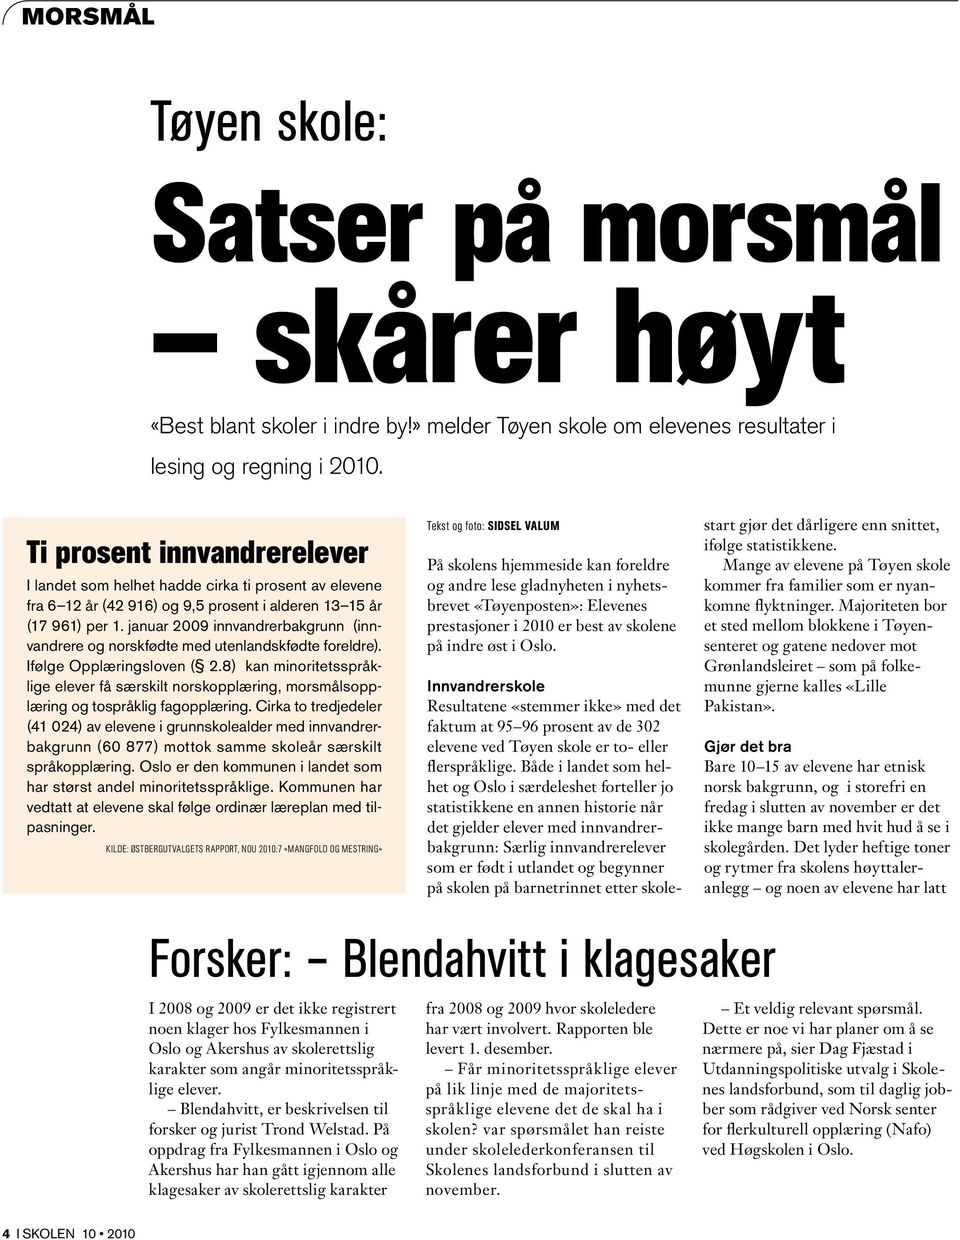 hjemmeside kan foreldre og andre lese gladnyheten i nyhetsbrevet «Tøyenposten»: Elevenes prestasjoner i 2010 er best av skolene på indre øst i Oslo.